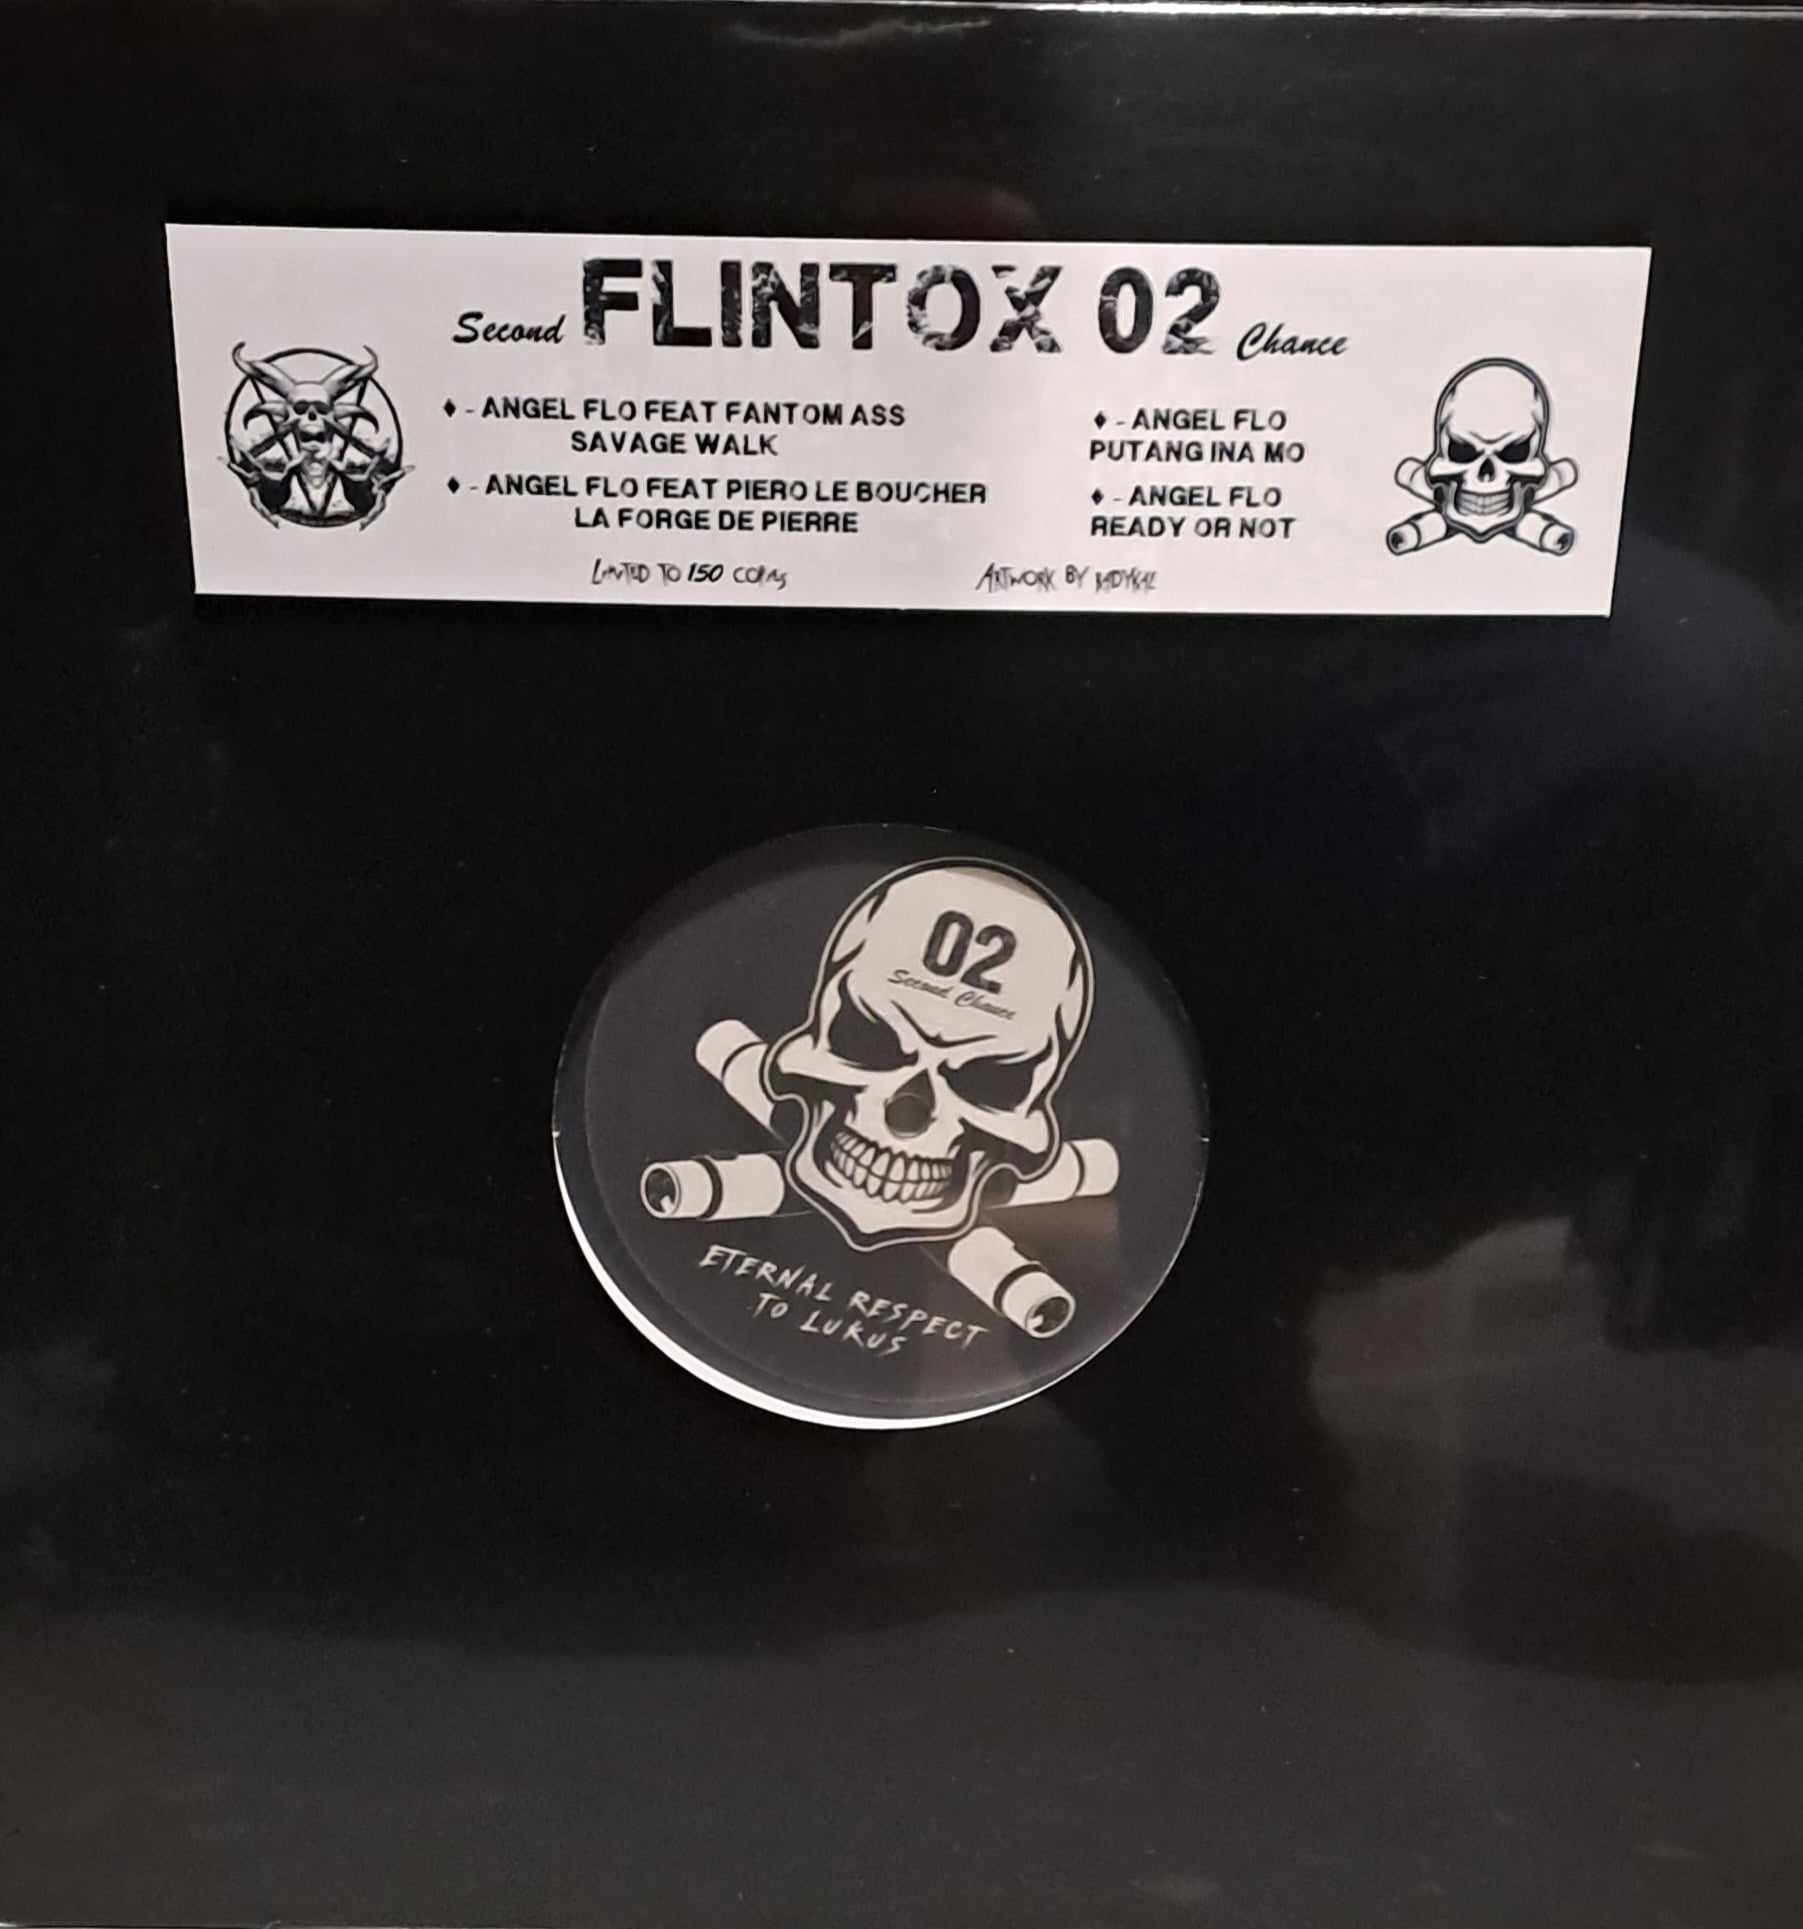 Flintox 02 (limiter à une copie) - vinyle hardcore